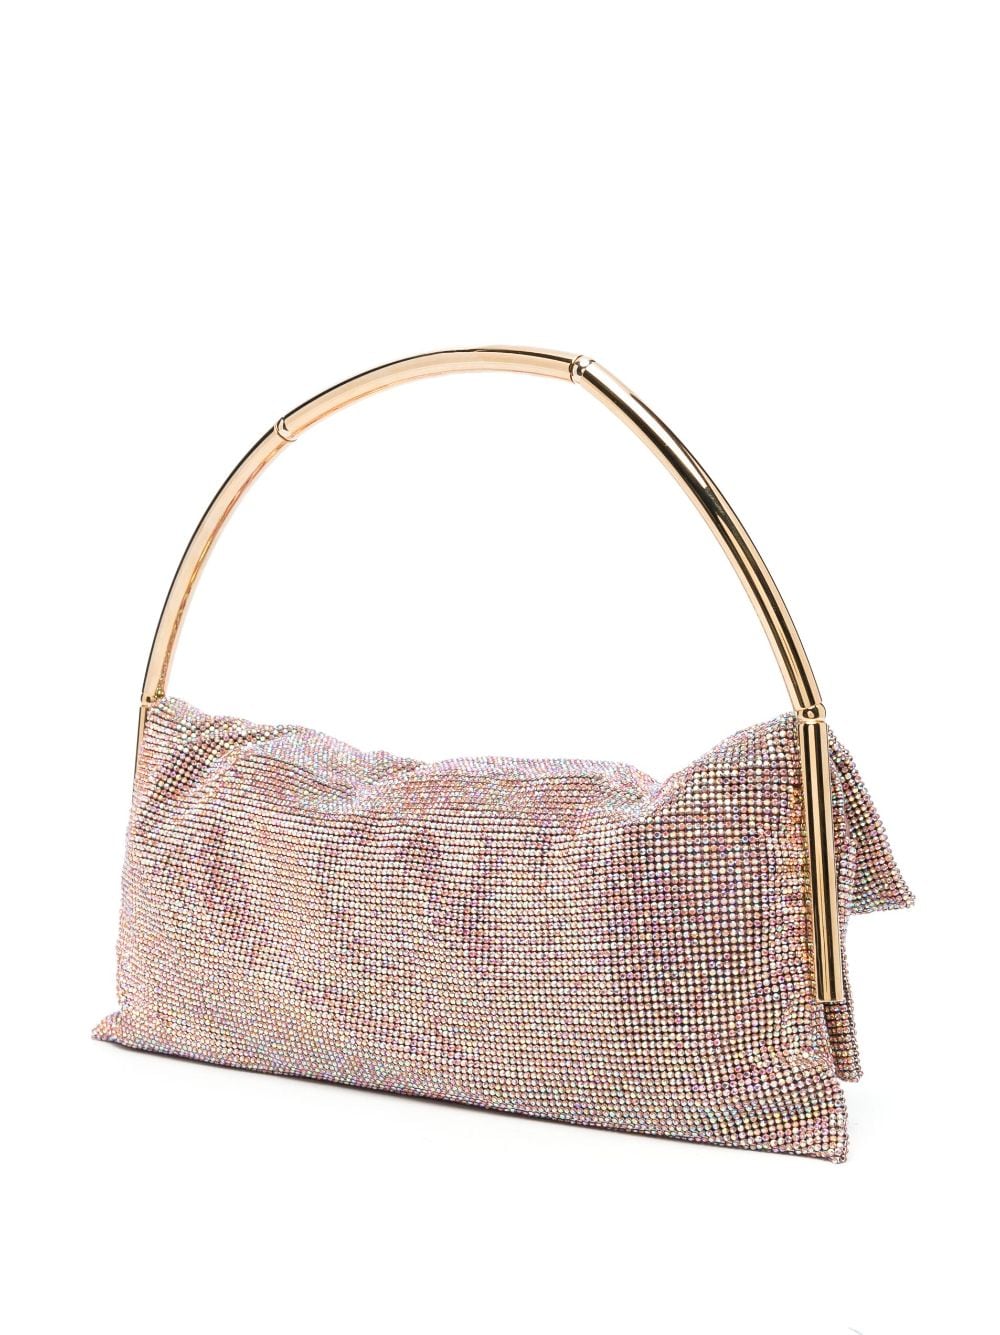 Benedetta Bruzziches crystal-embellished shoulder bag